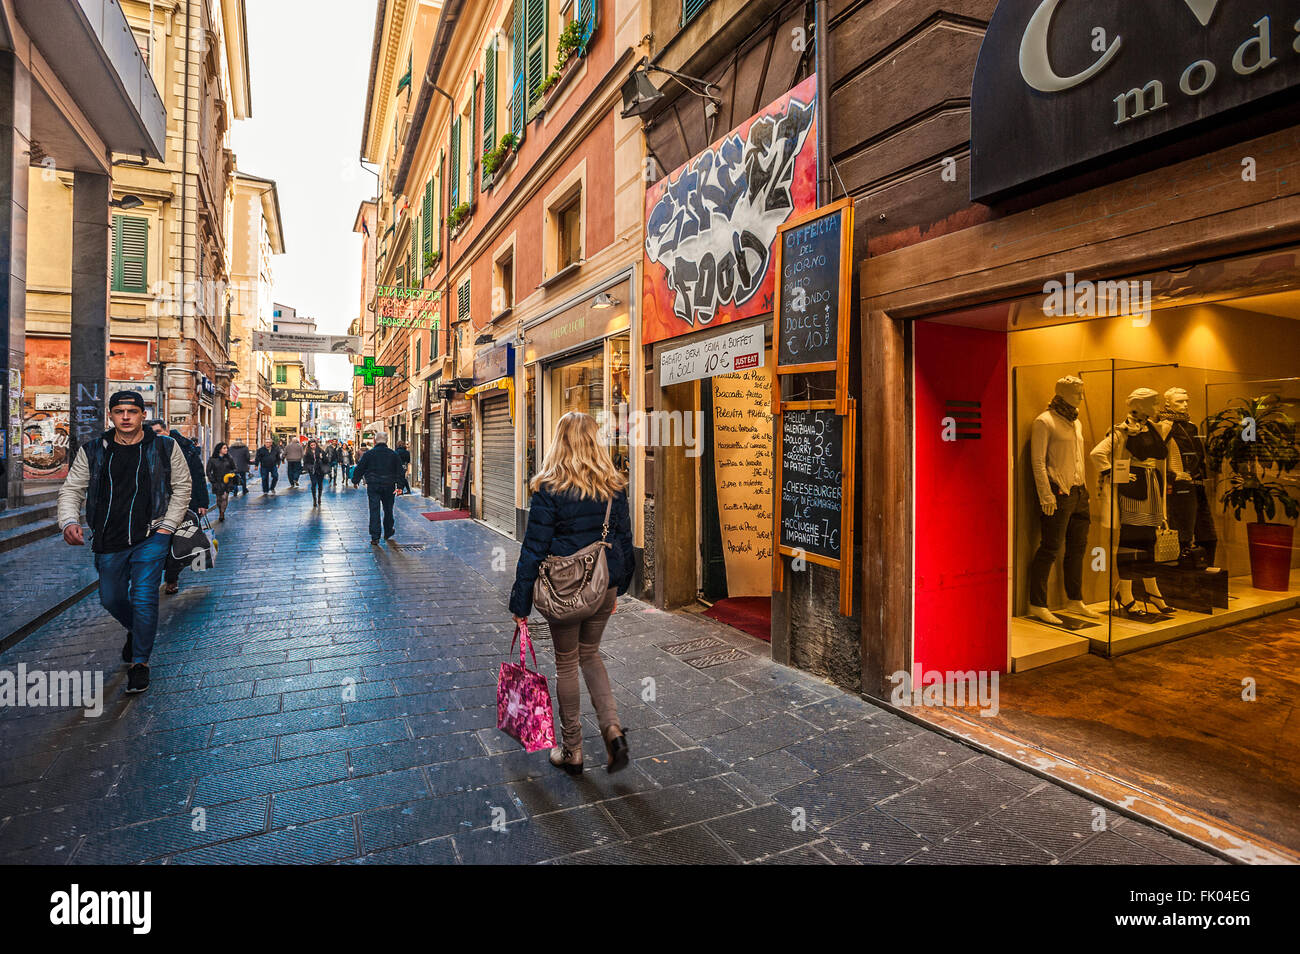 Italien Ligurien Genua über San Vincenzo - Fußgänger-Einkaufsstraße Stockfoto